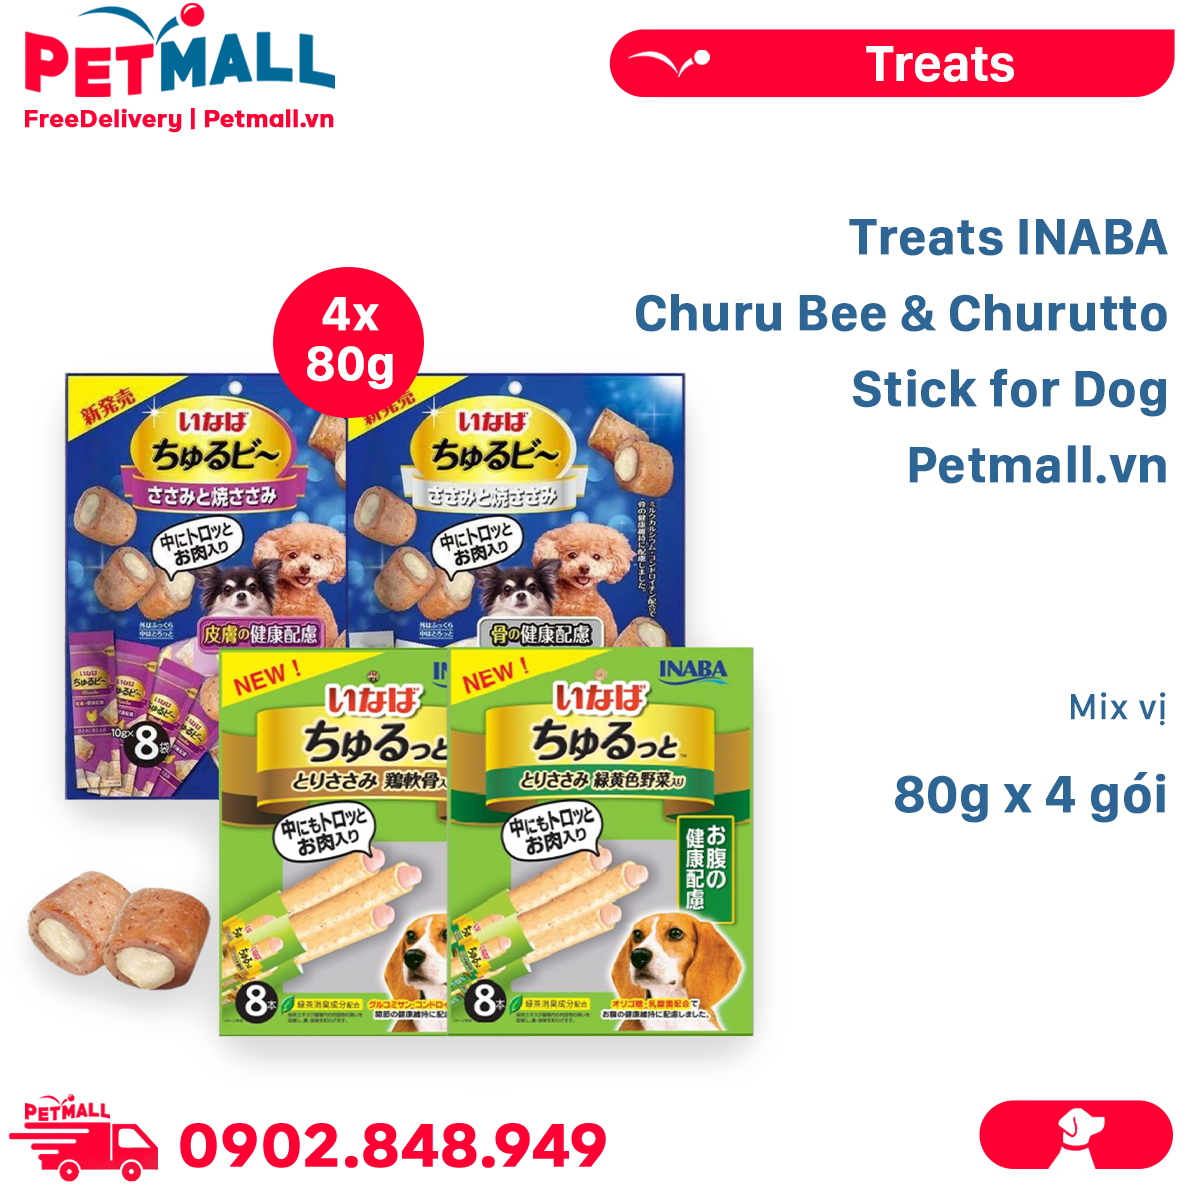 Combo Treats INABA Churu Bee & Churutto Stick for Dog 80g - Mix vị